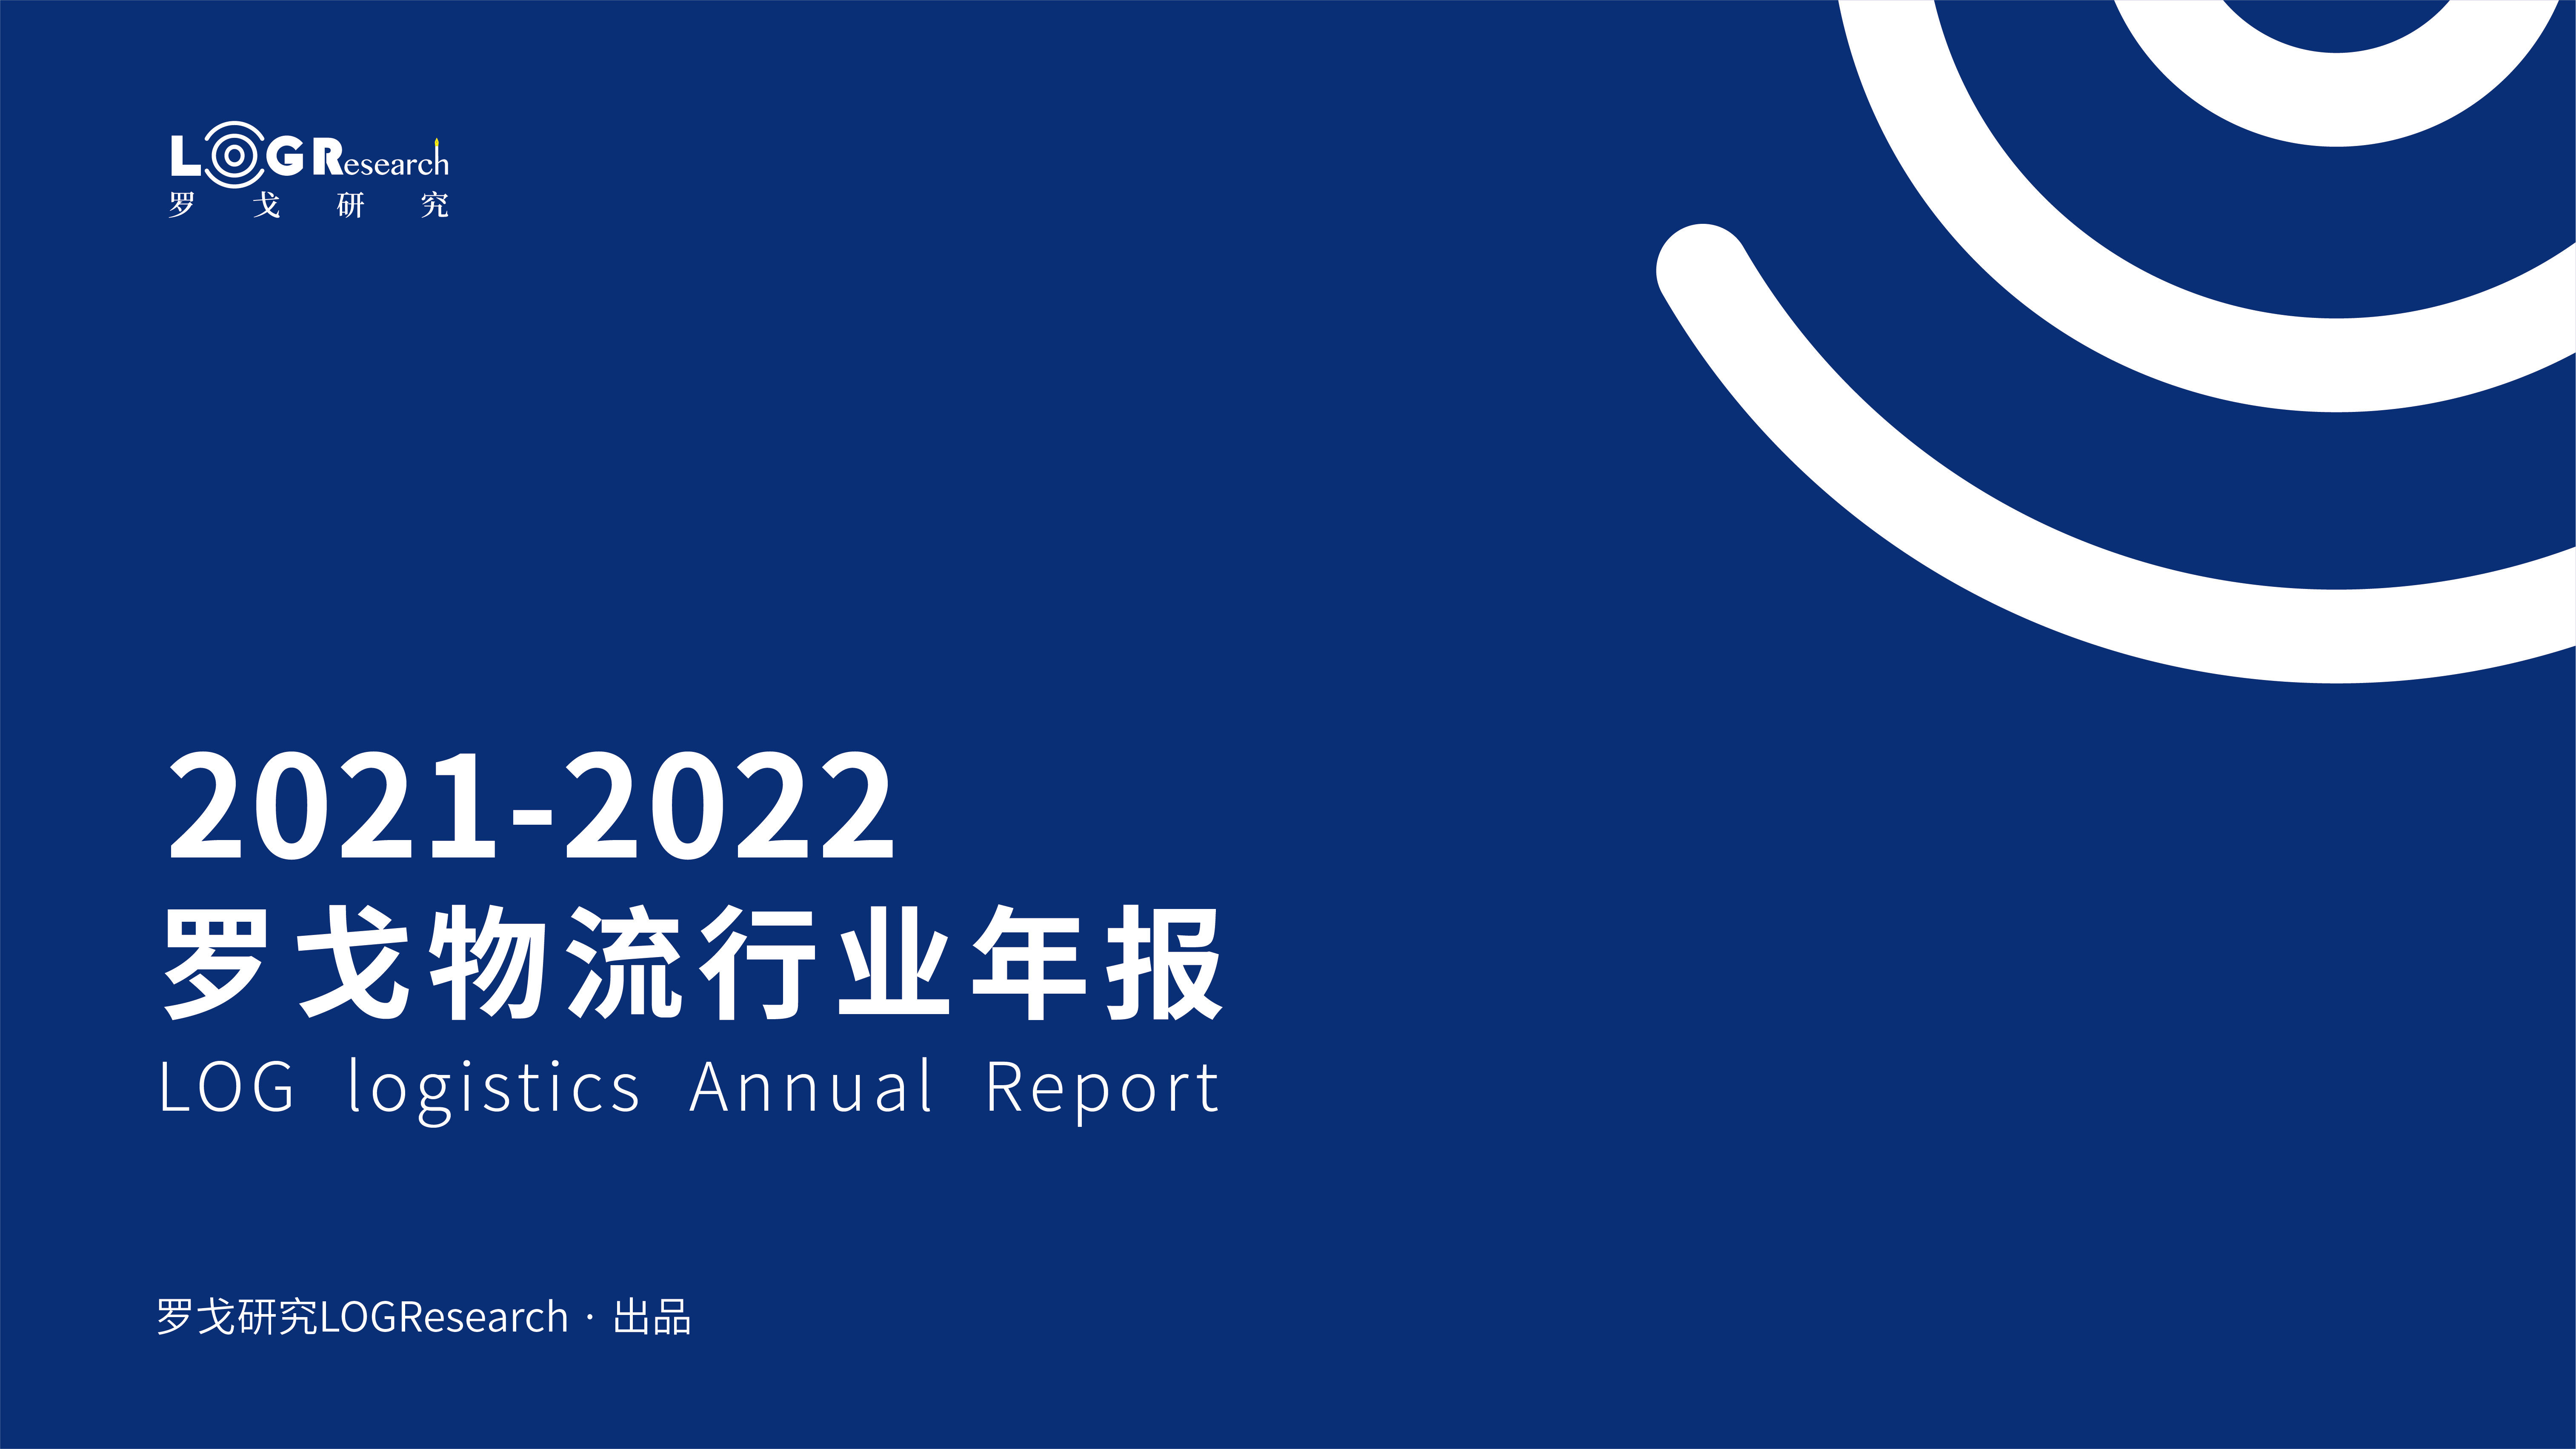 2021-2022罗戈物流行业年报